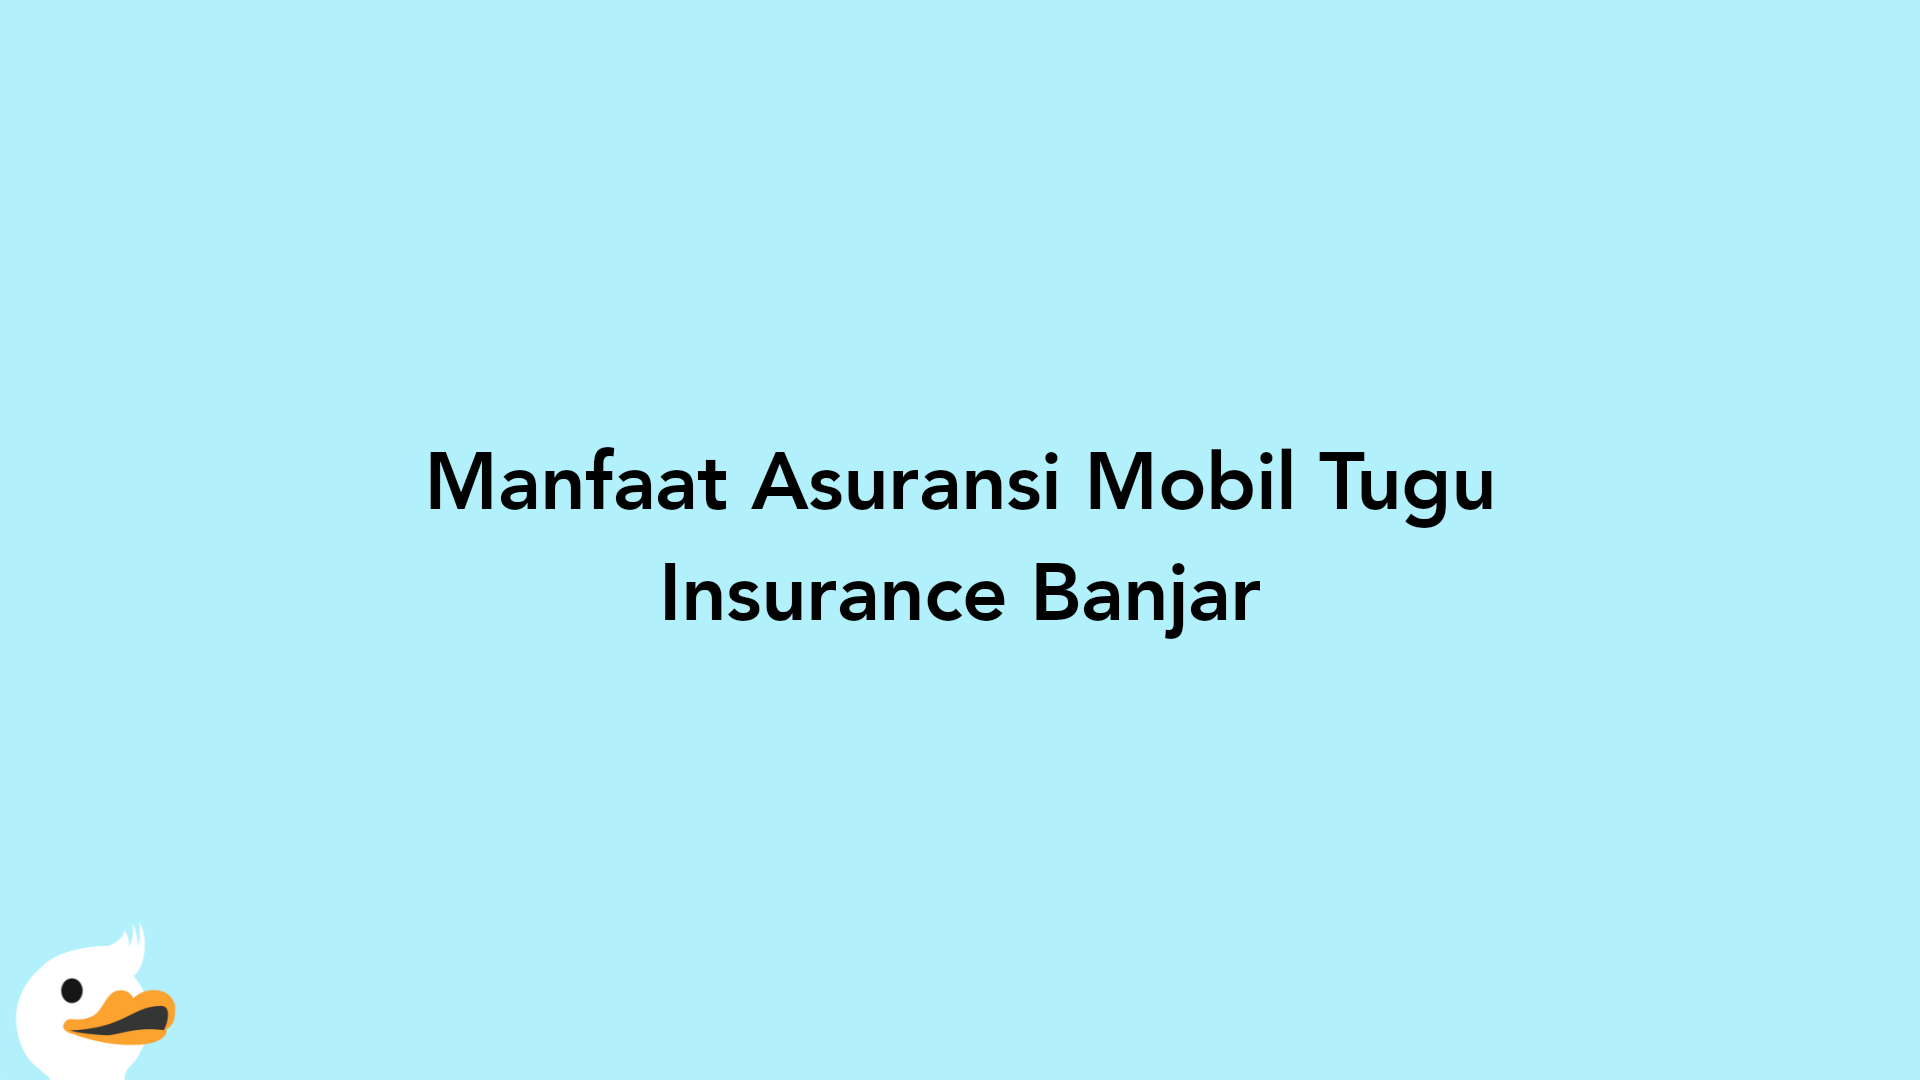 Manfaat Asuransi Mobil Tugu Insurance Banjar